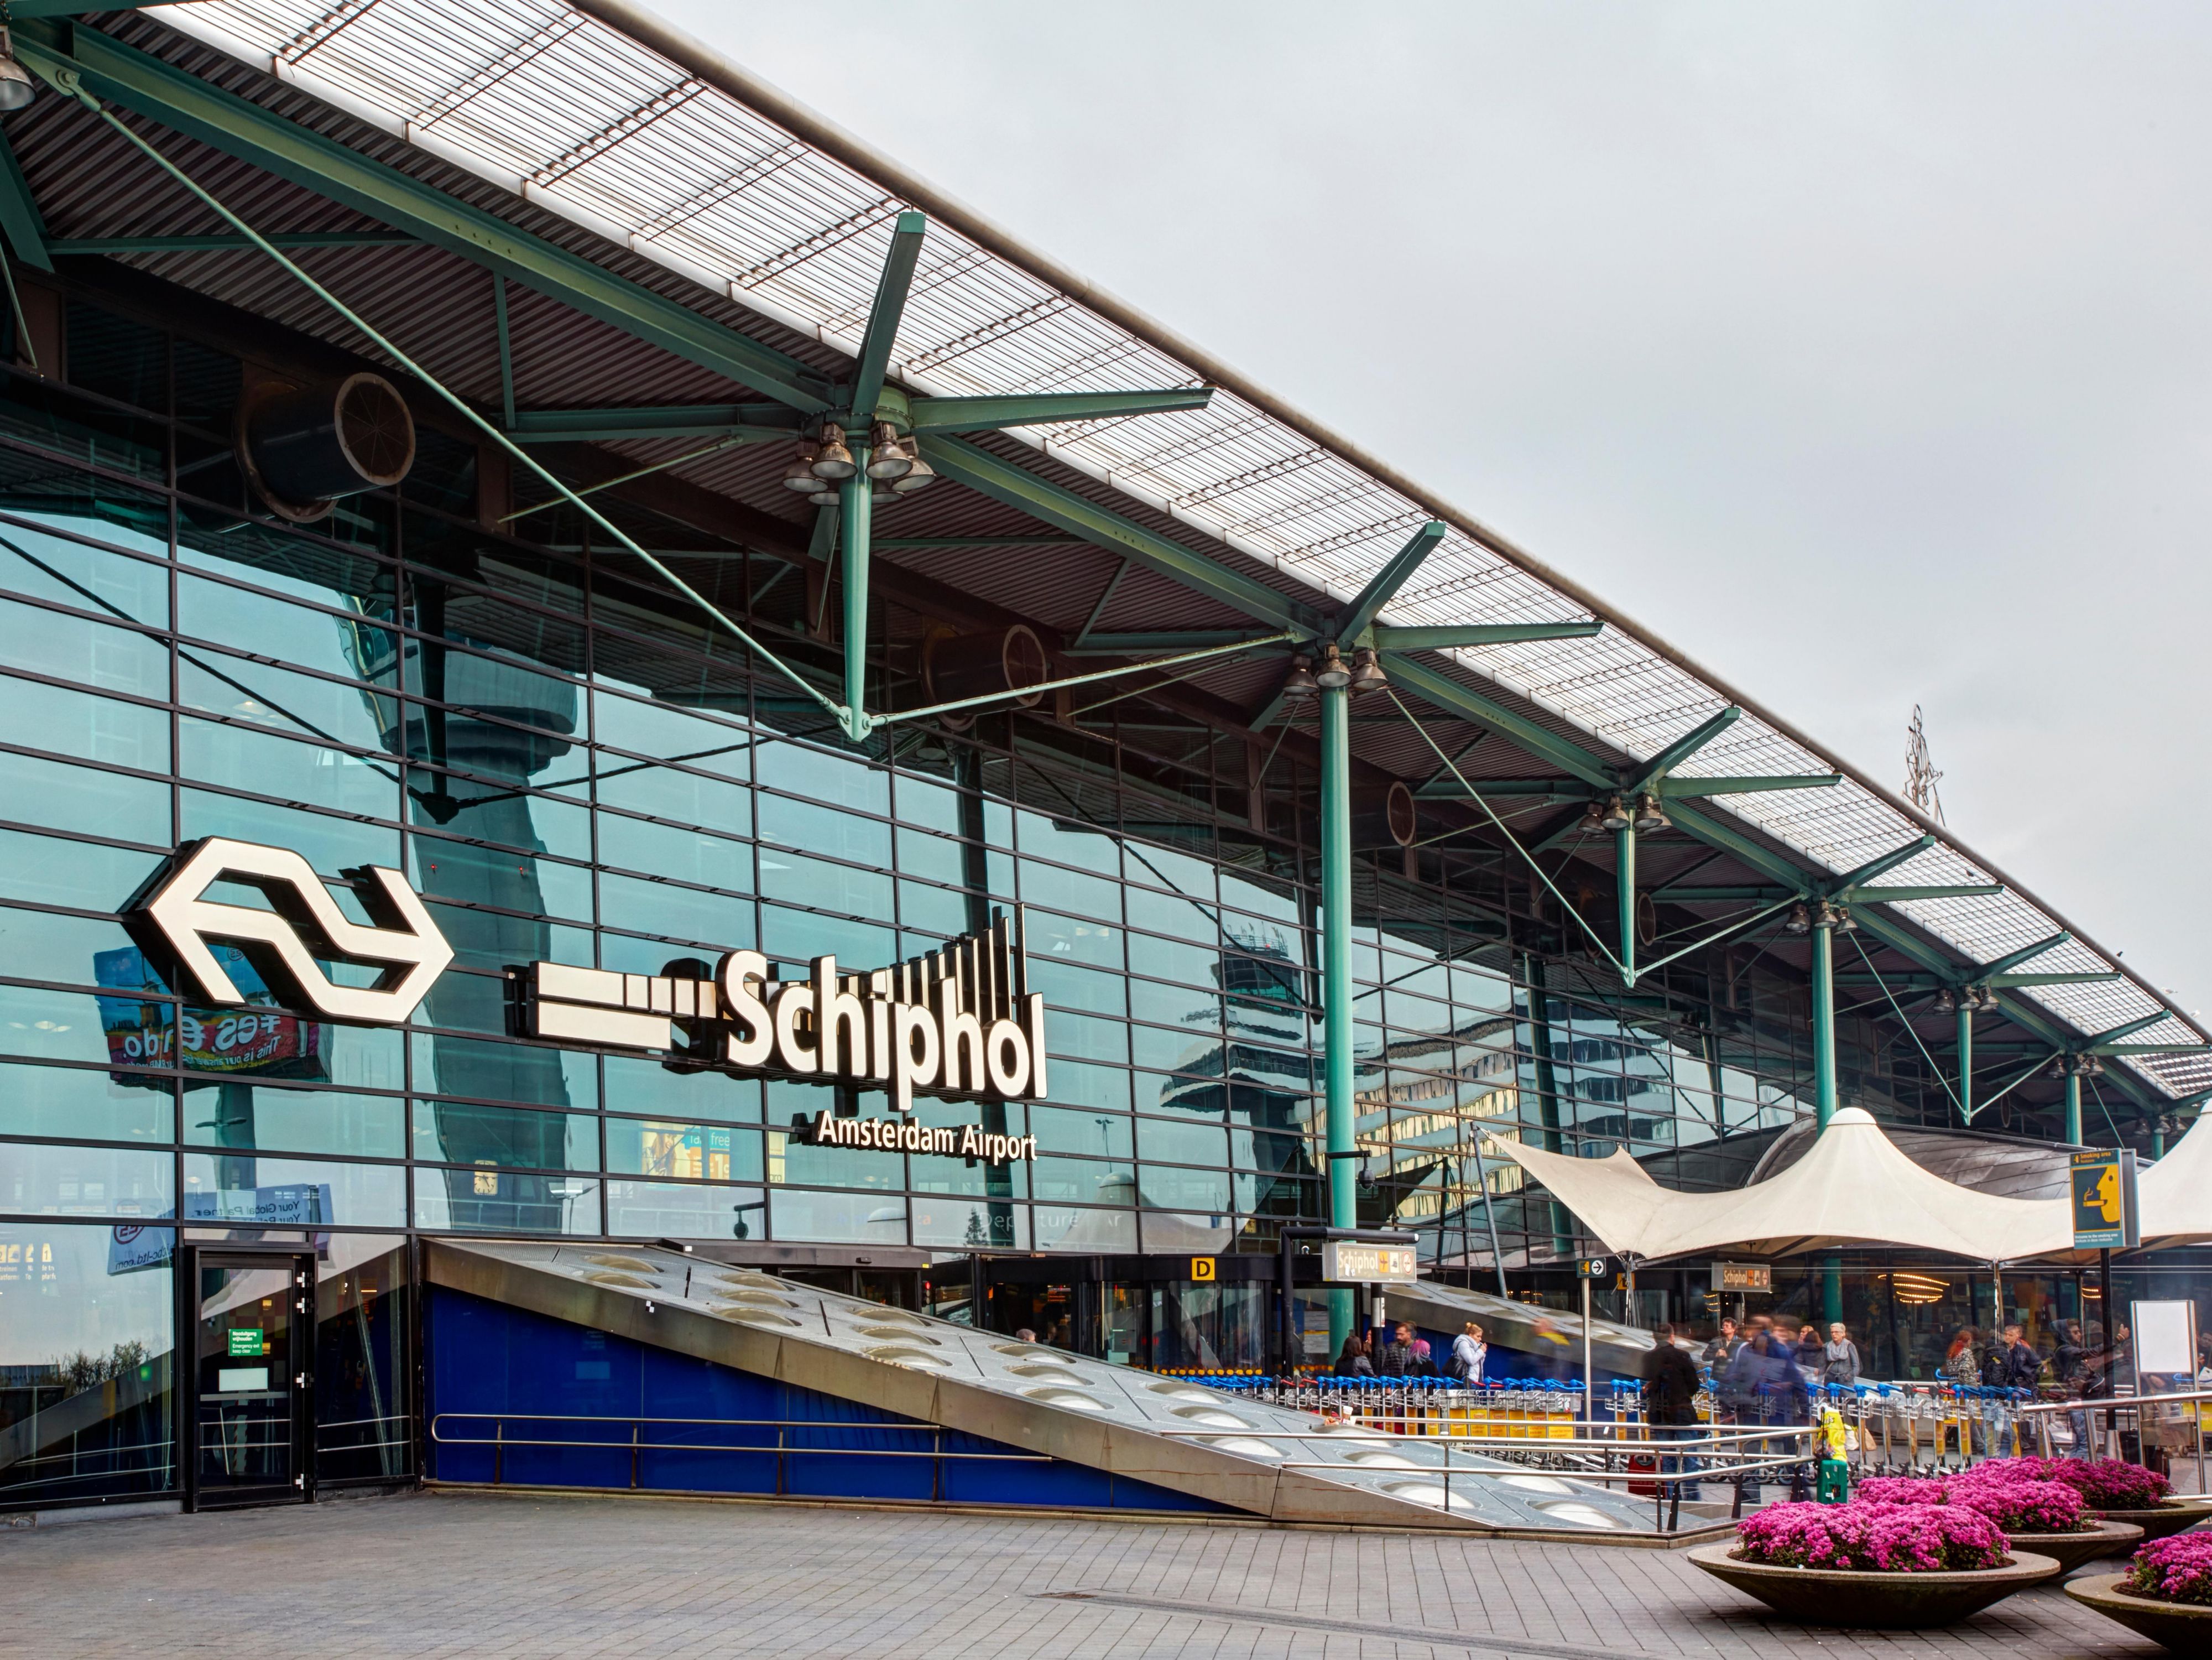 10 minuten met de gratis shuttle naar Amsterdam Schiphol Airport